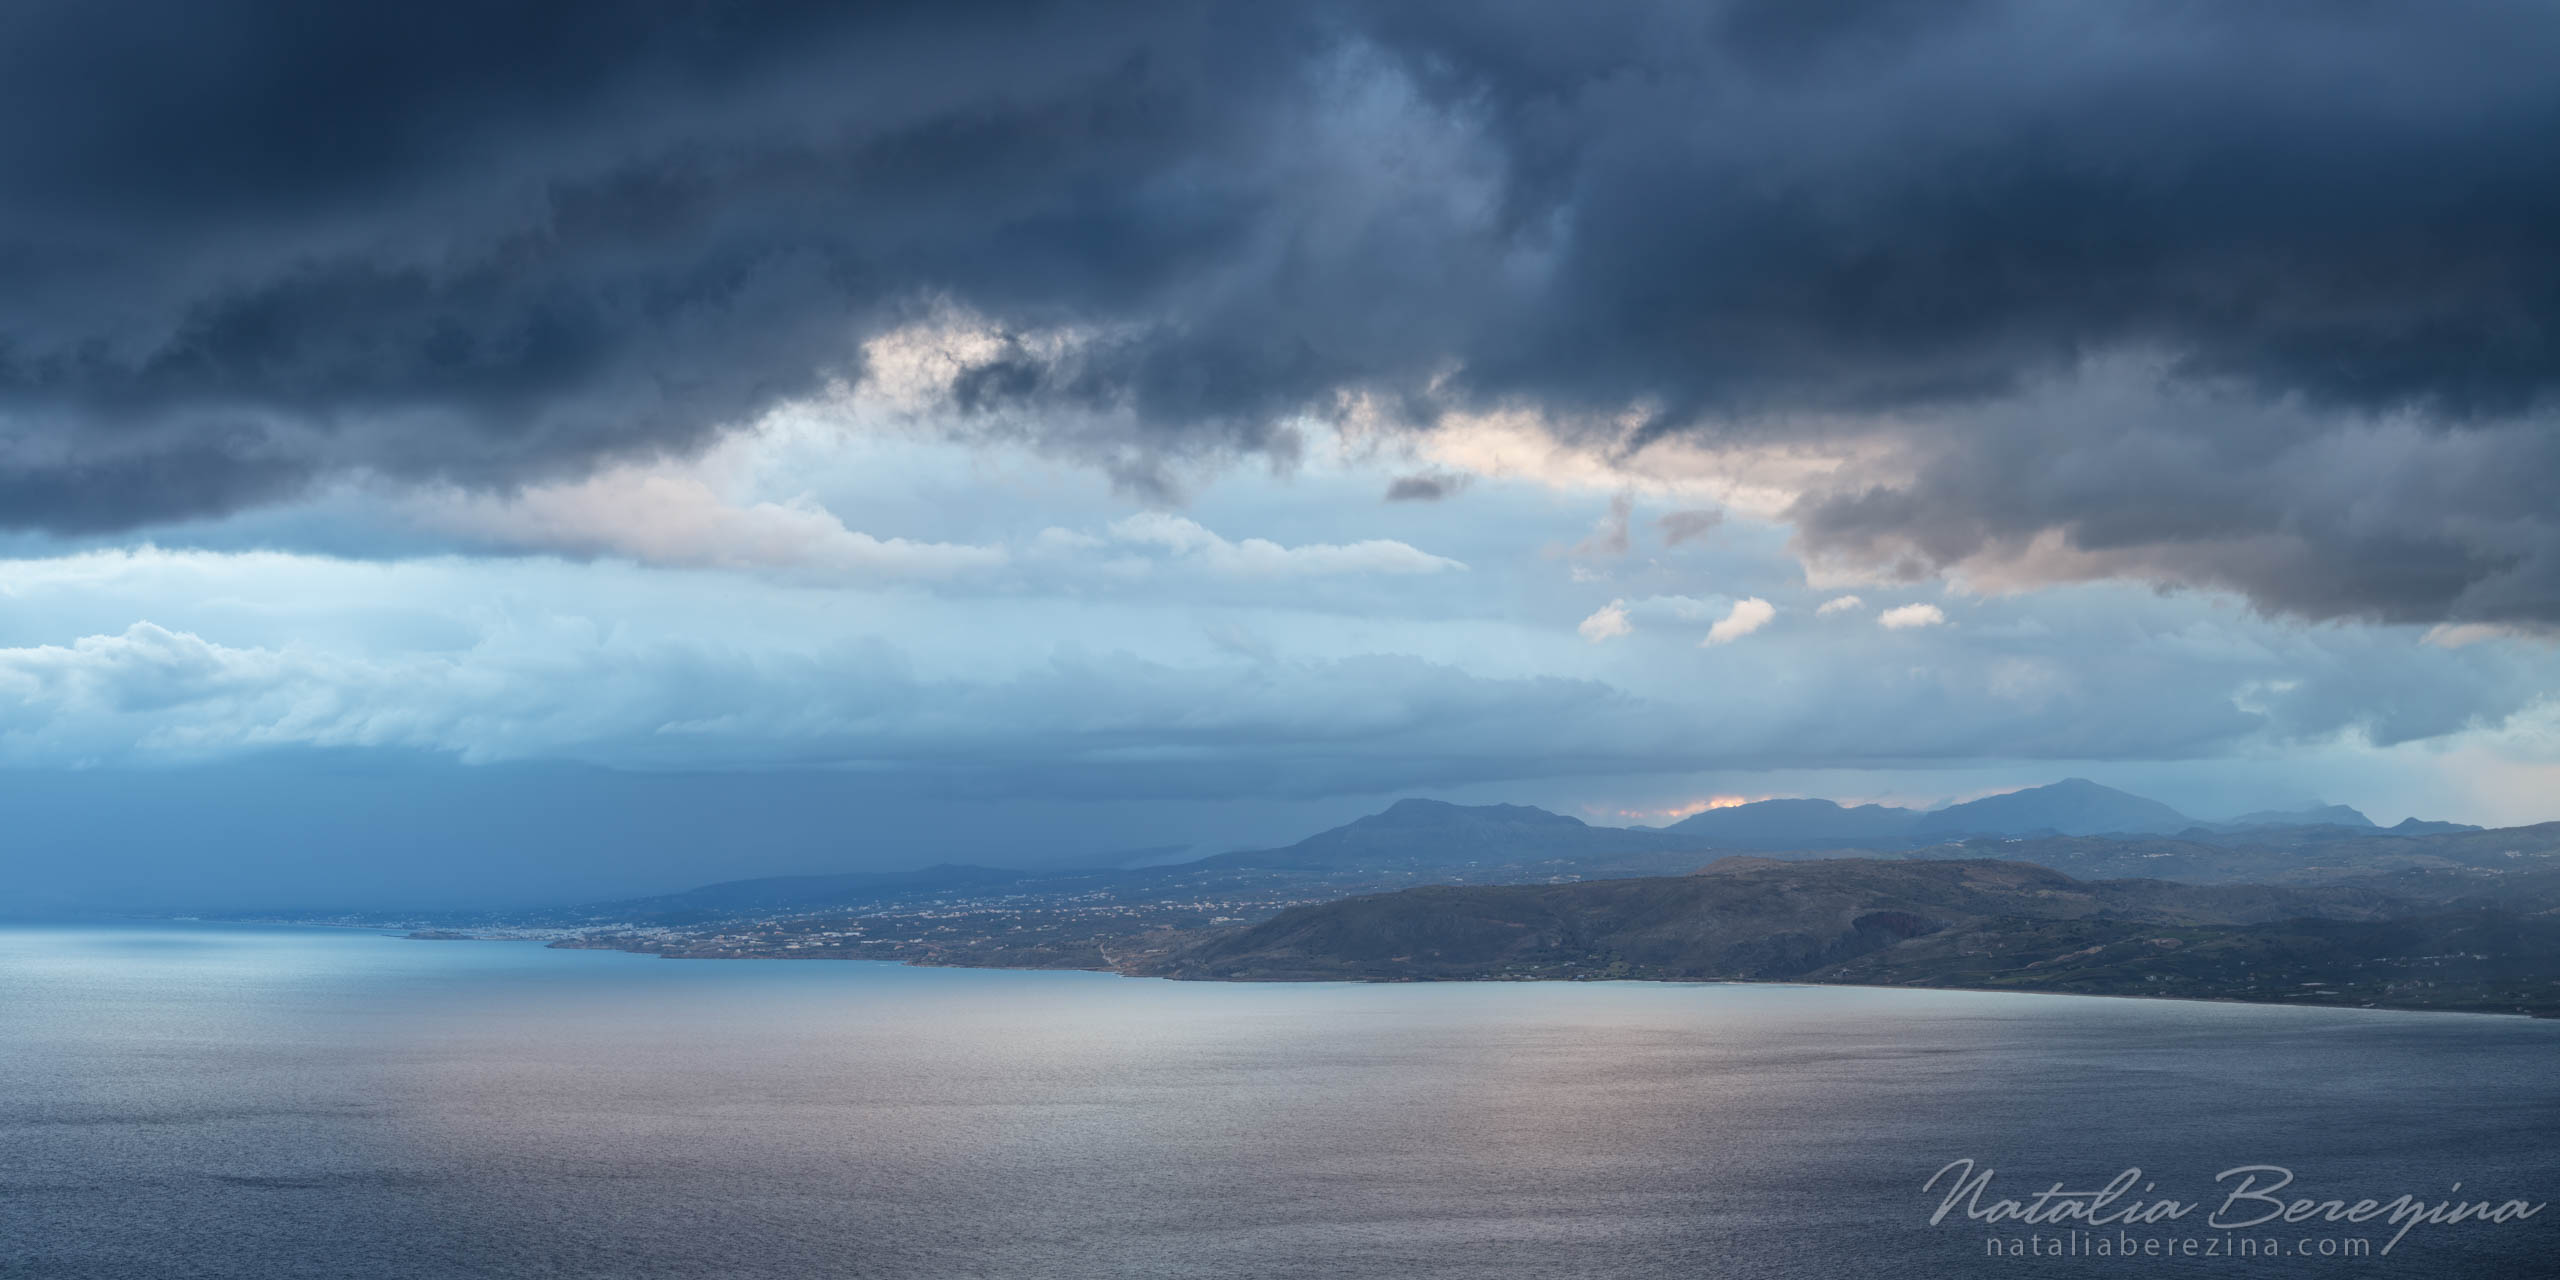 Greece, Crete, landscape, sea, cloud, sunlight, skyline, 2x1 CR1-NB0B4A9264-P - Crete, Greece - Natalia Berezina Photography